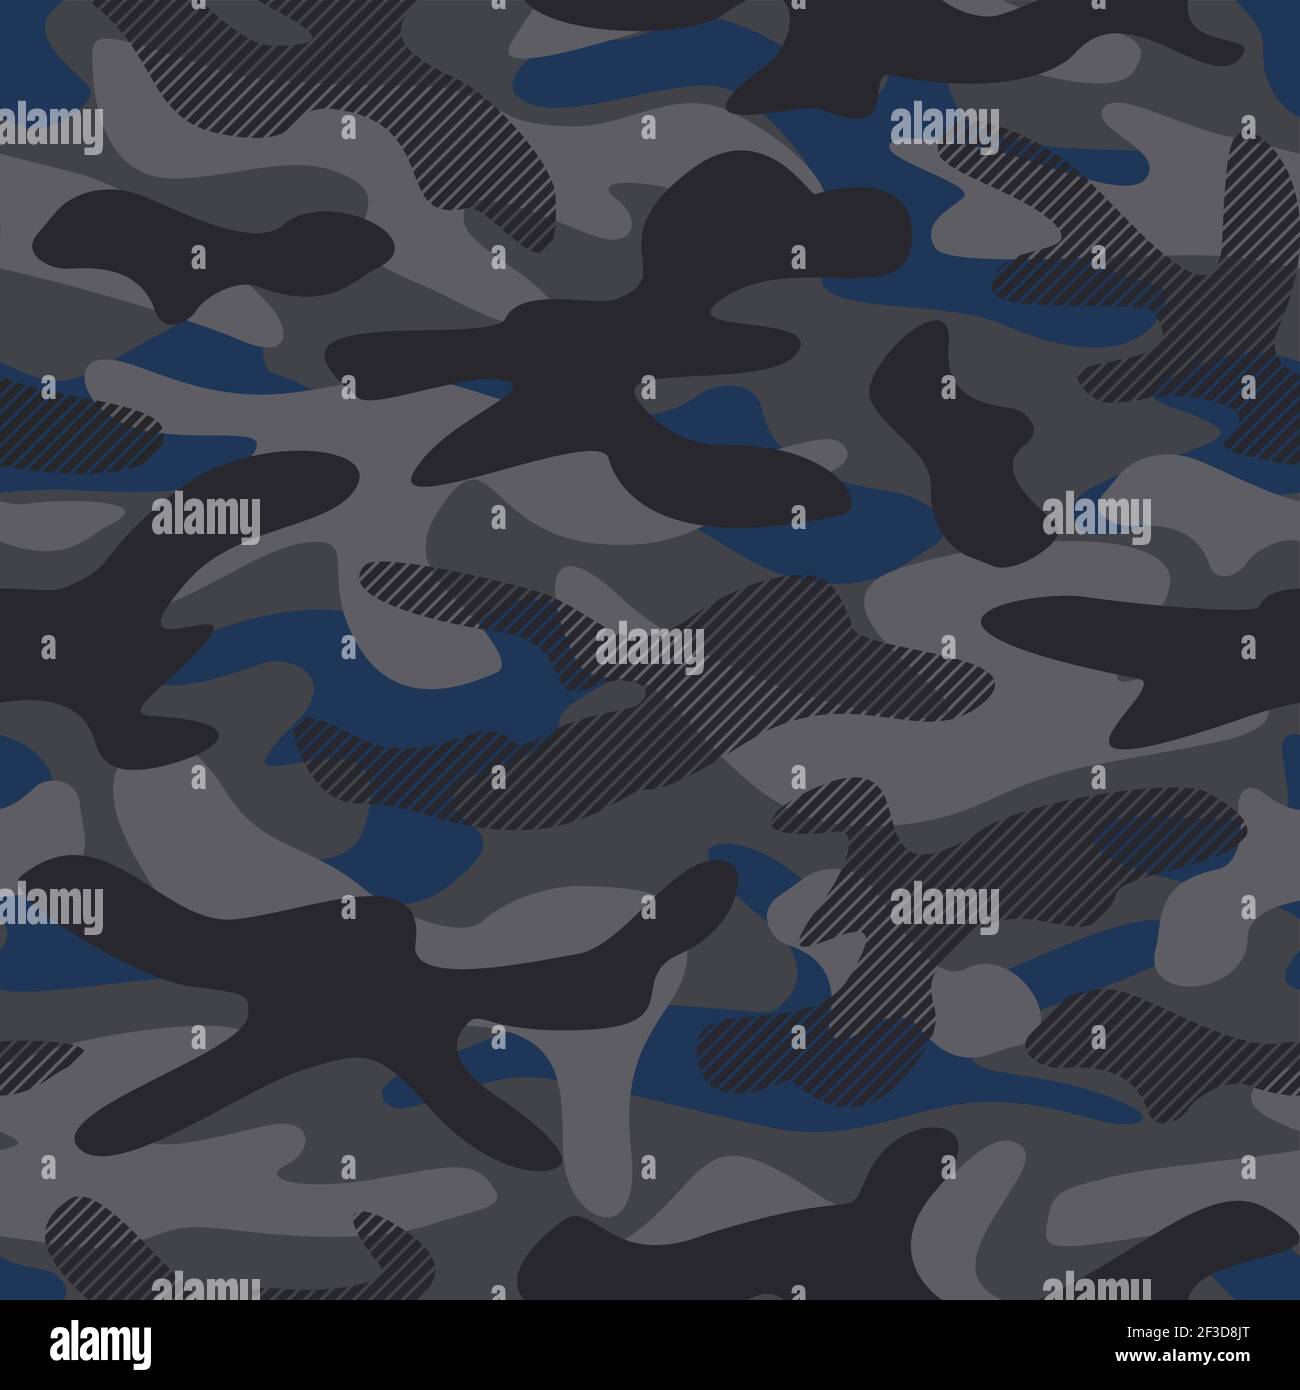 Grau Schwarz und Blau Urban Camouflage Vektor nahtlose Musterillustration. Camo-Print mit Streifen-Effekt für modisches Textil-Design. Stock Vektor